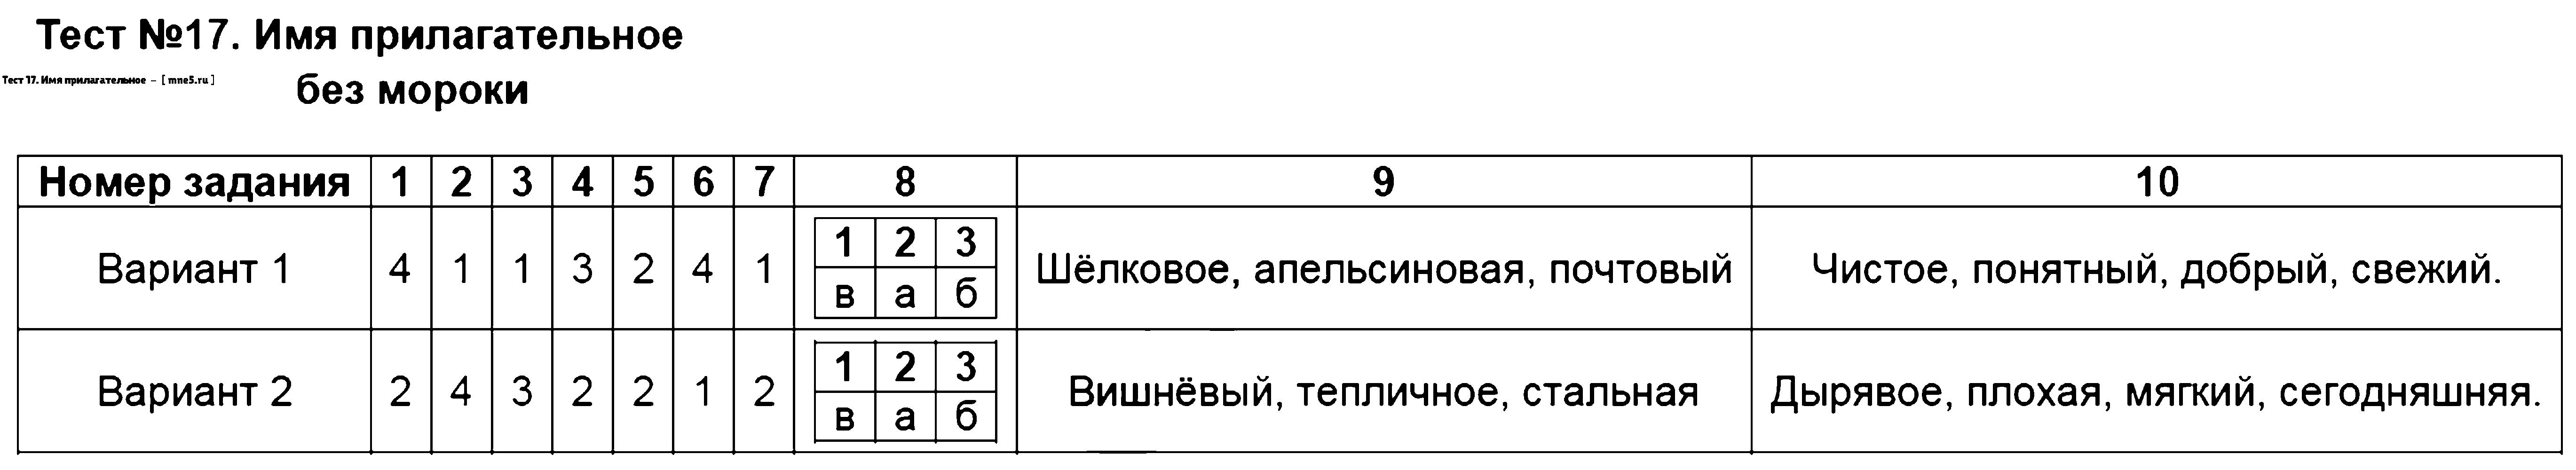 ГДЗ Русский язык 3 класс - Тест 17. Имя прилагательное